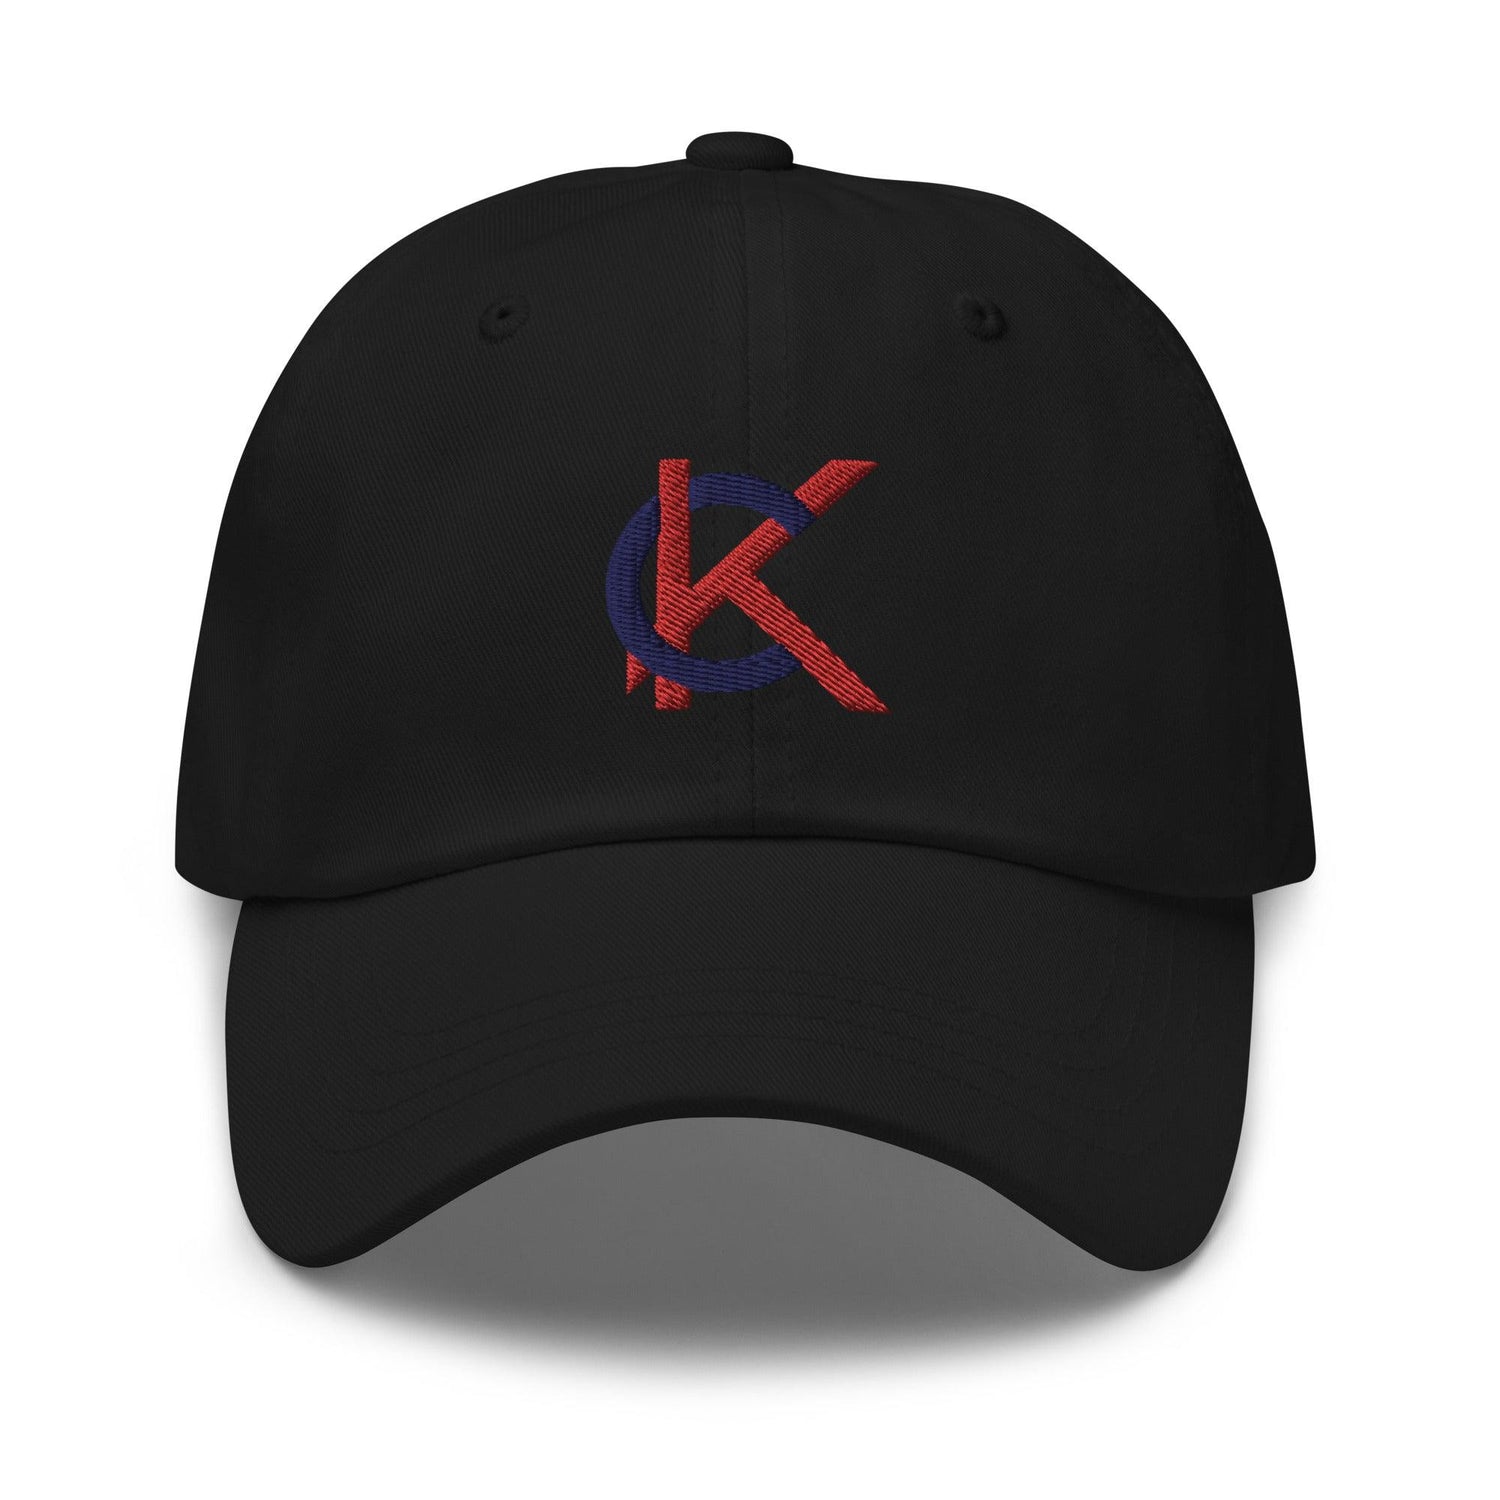 Kutter Crawford "Elite" hat - Fan Arch